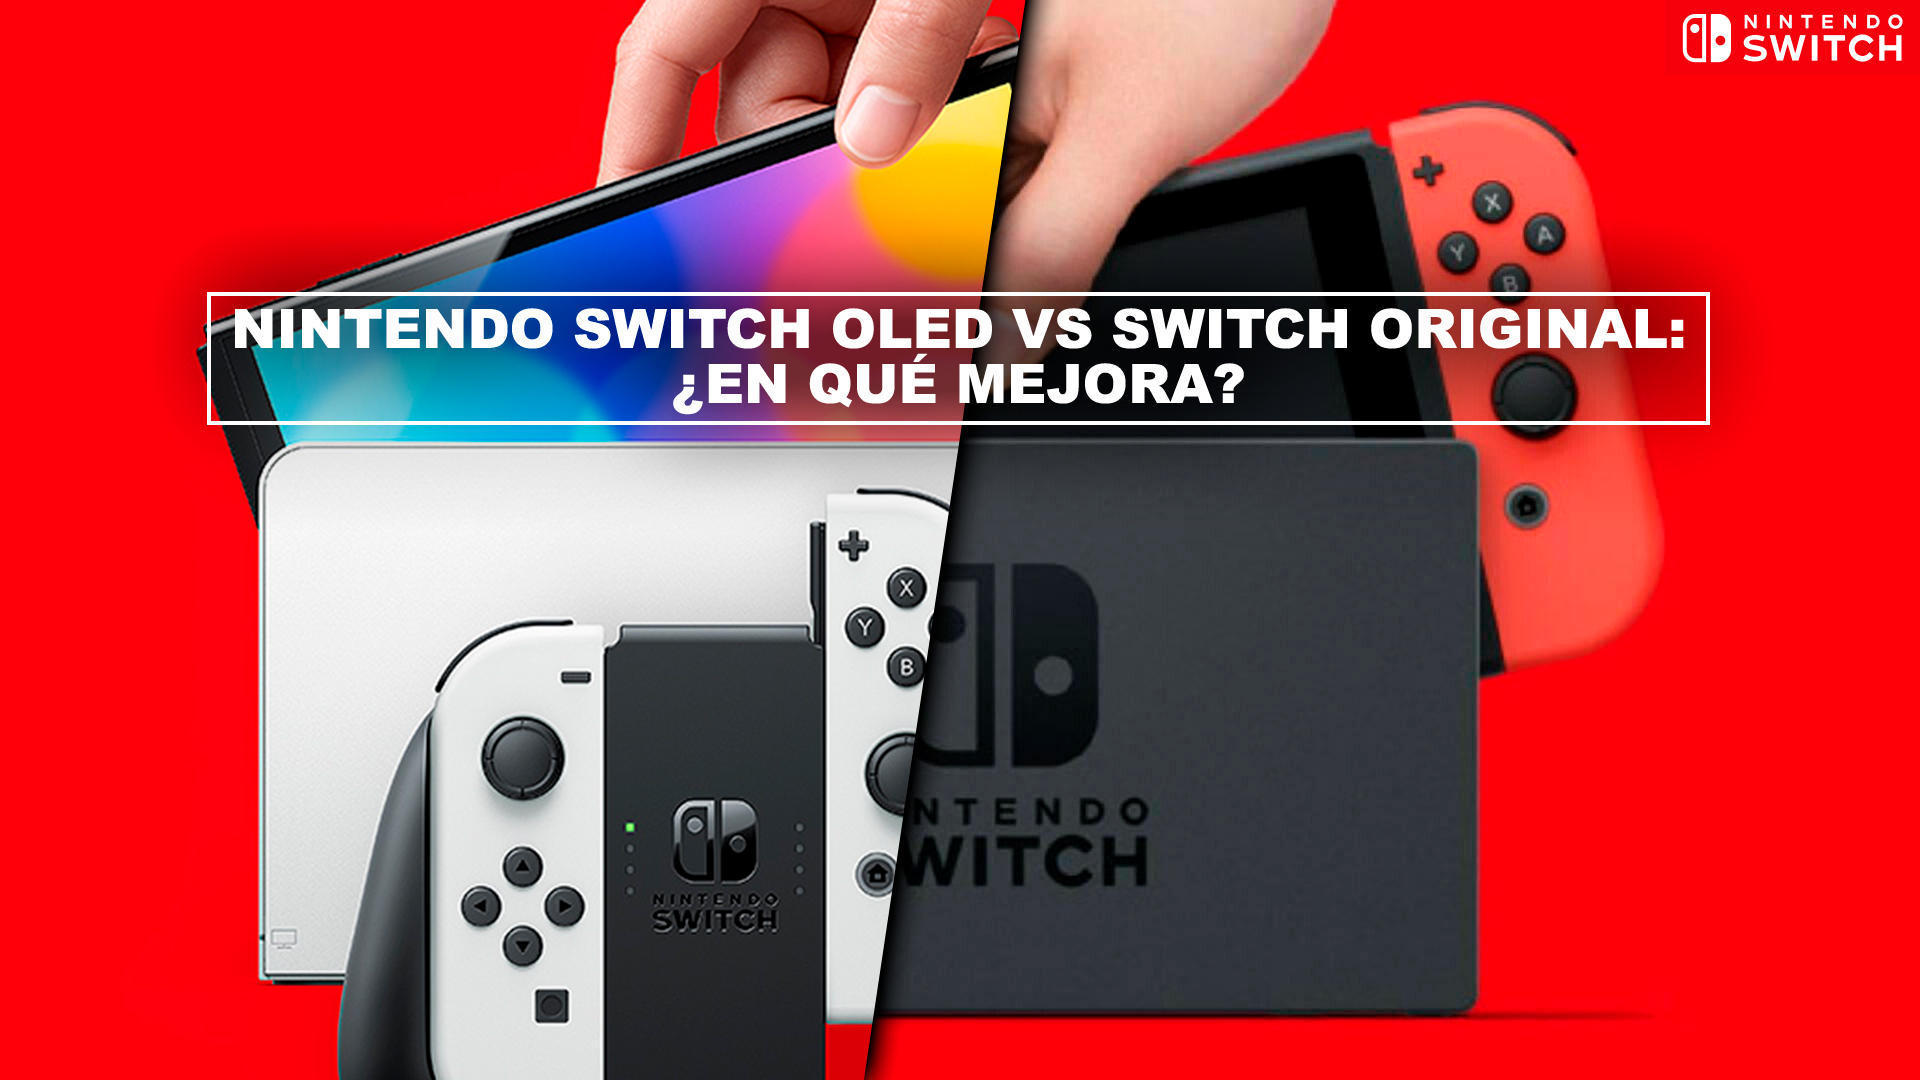 aburrido Si Mentalmente Nintendo Switch OLED vs Switch original: ¿en qué mejora? - Diferencias y  comparativa